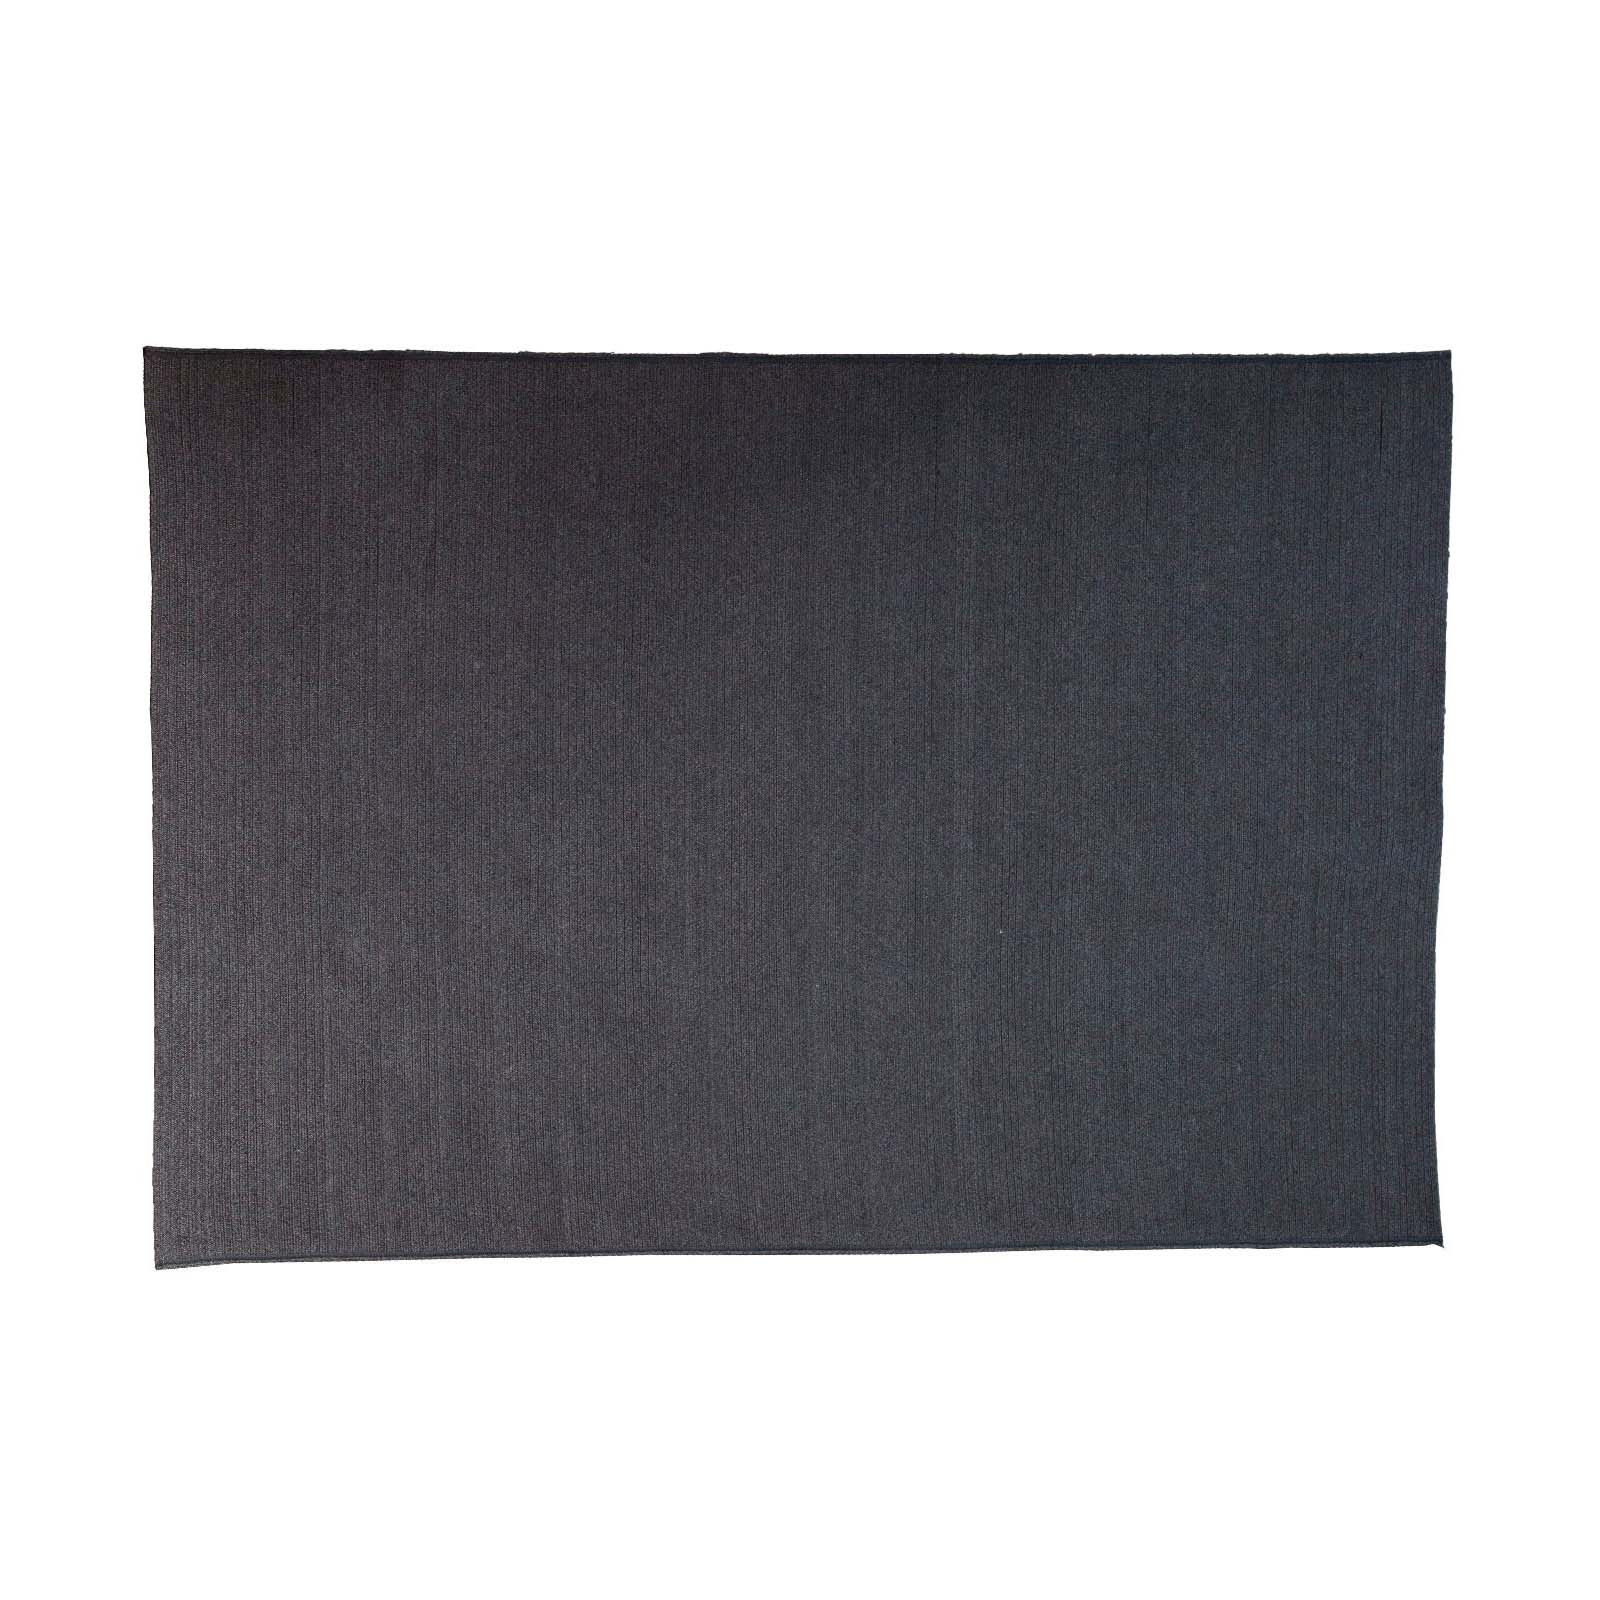 Circle Teppich 240x170 cm aus Cane-line Soft Rope in Dark Grey